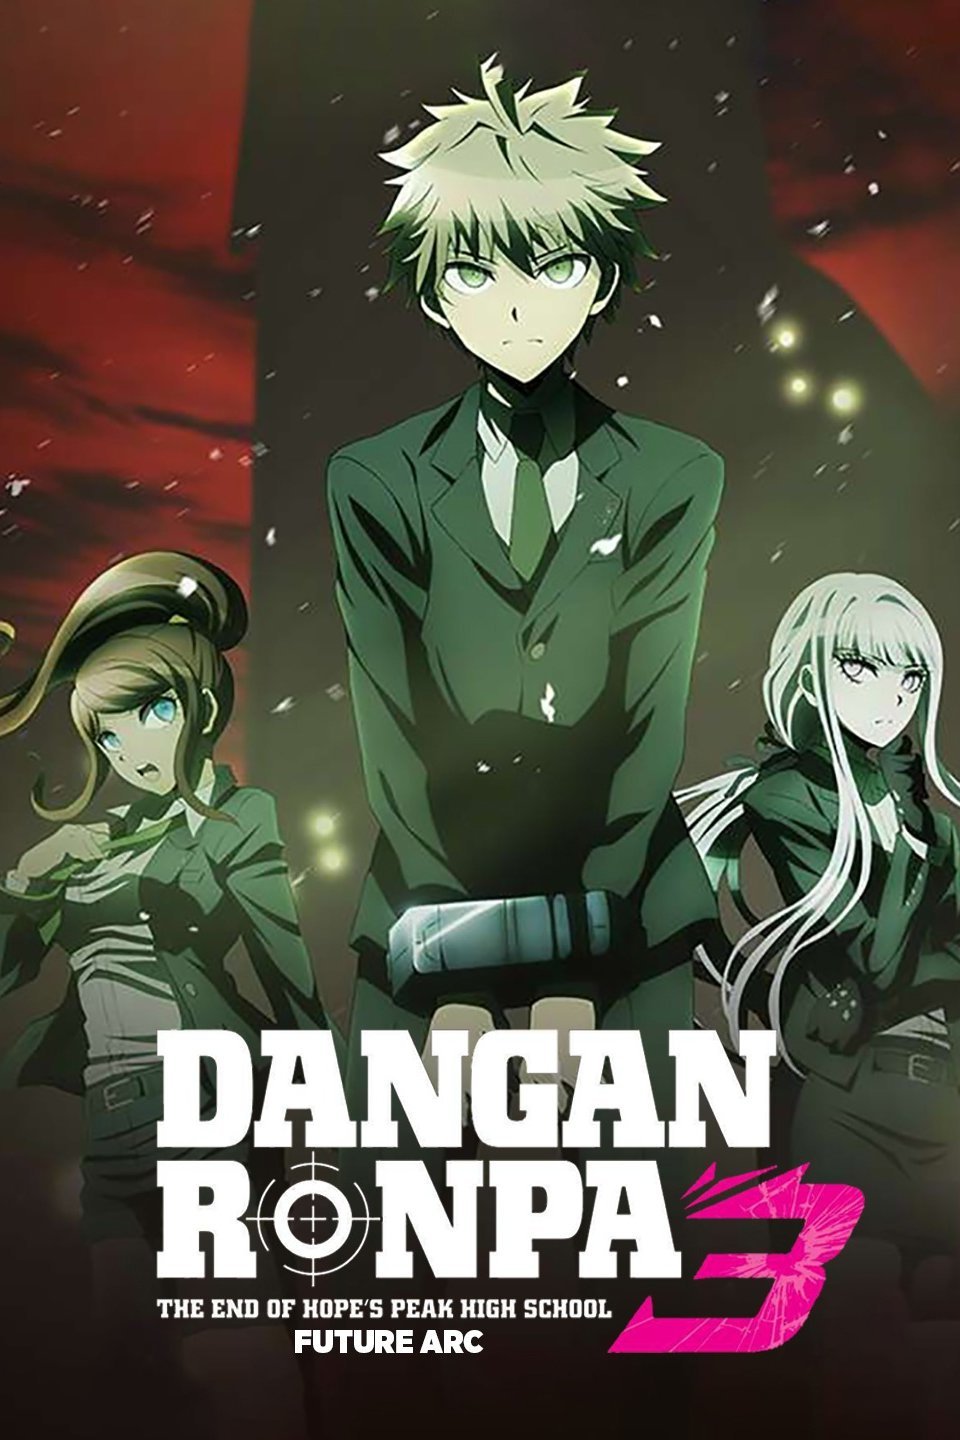 Stream danganronpa 2 opening anime by saiko